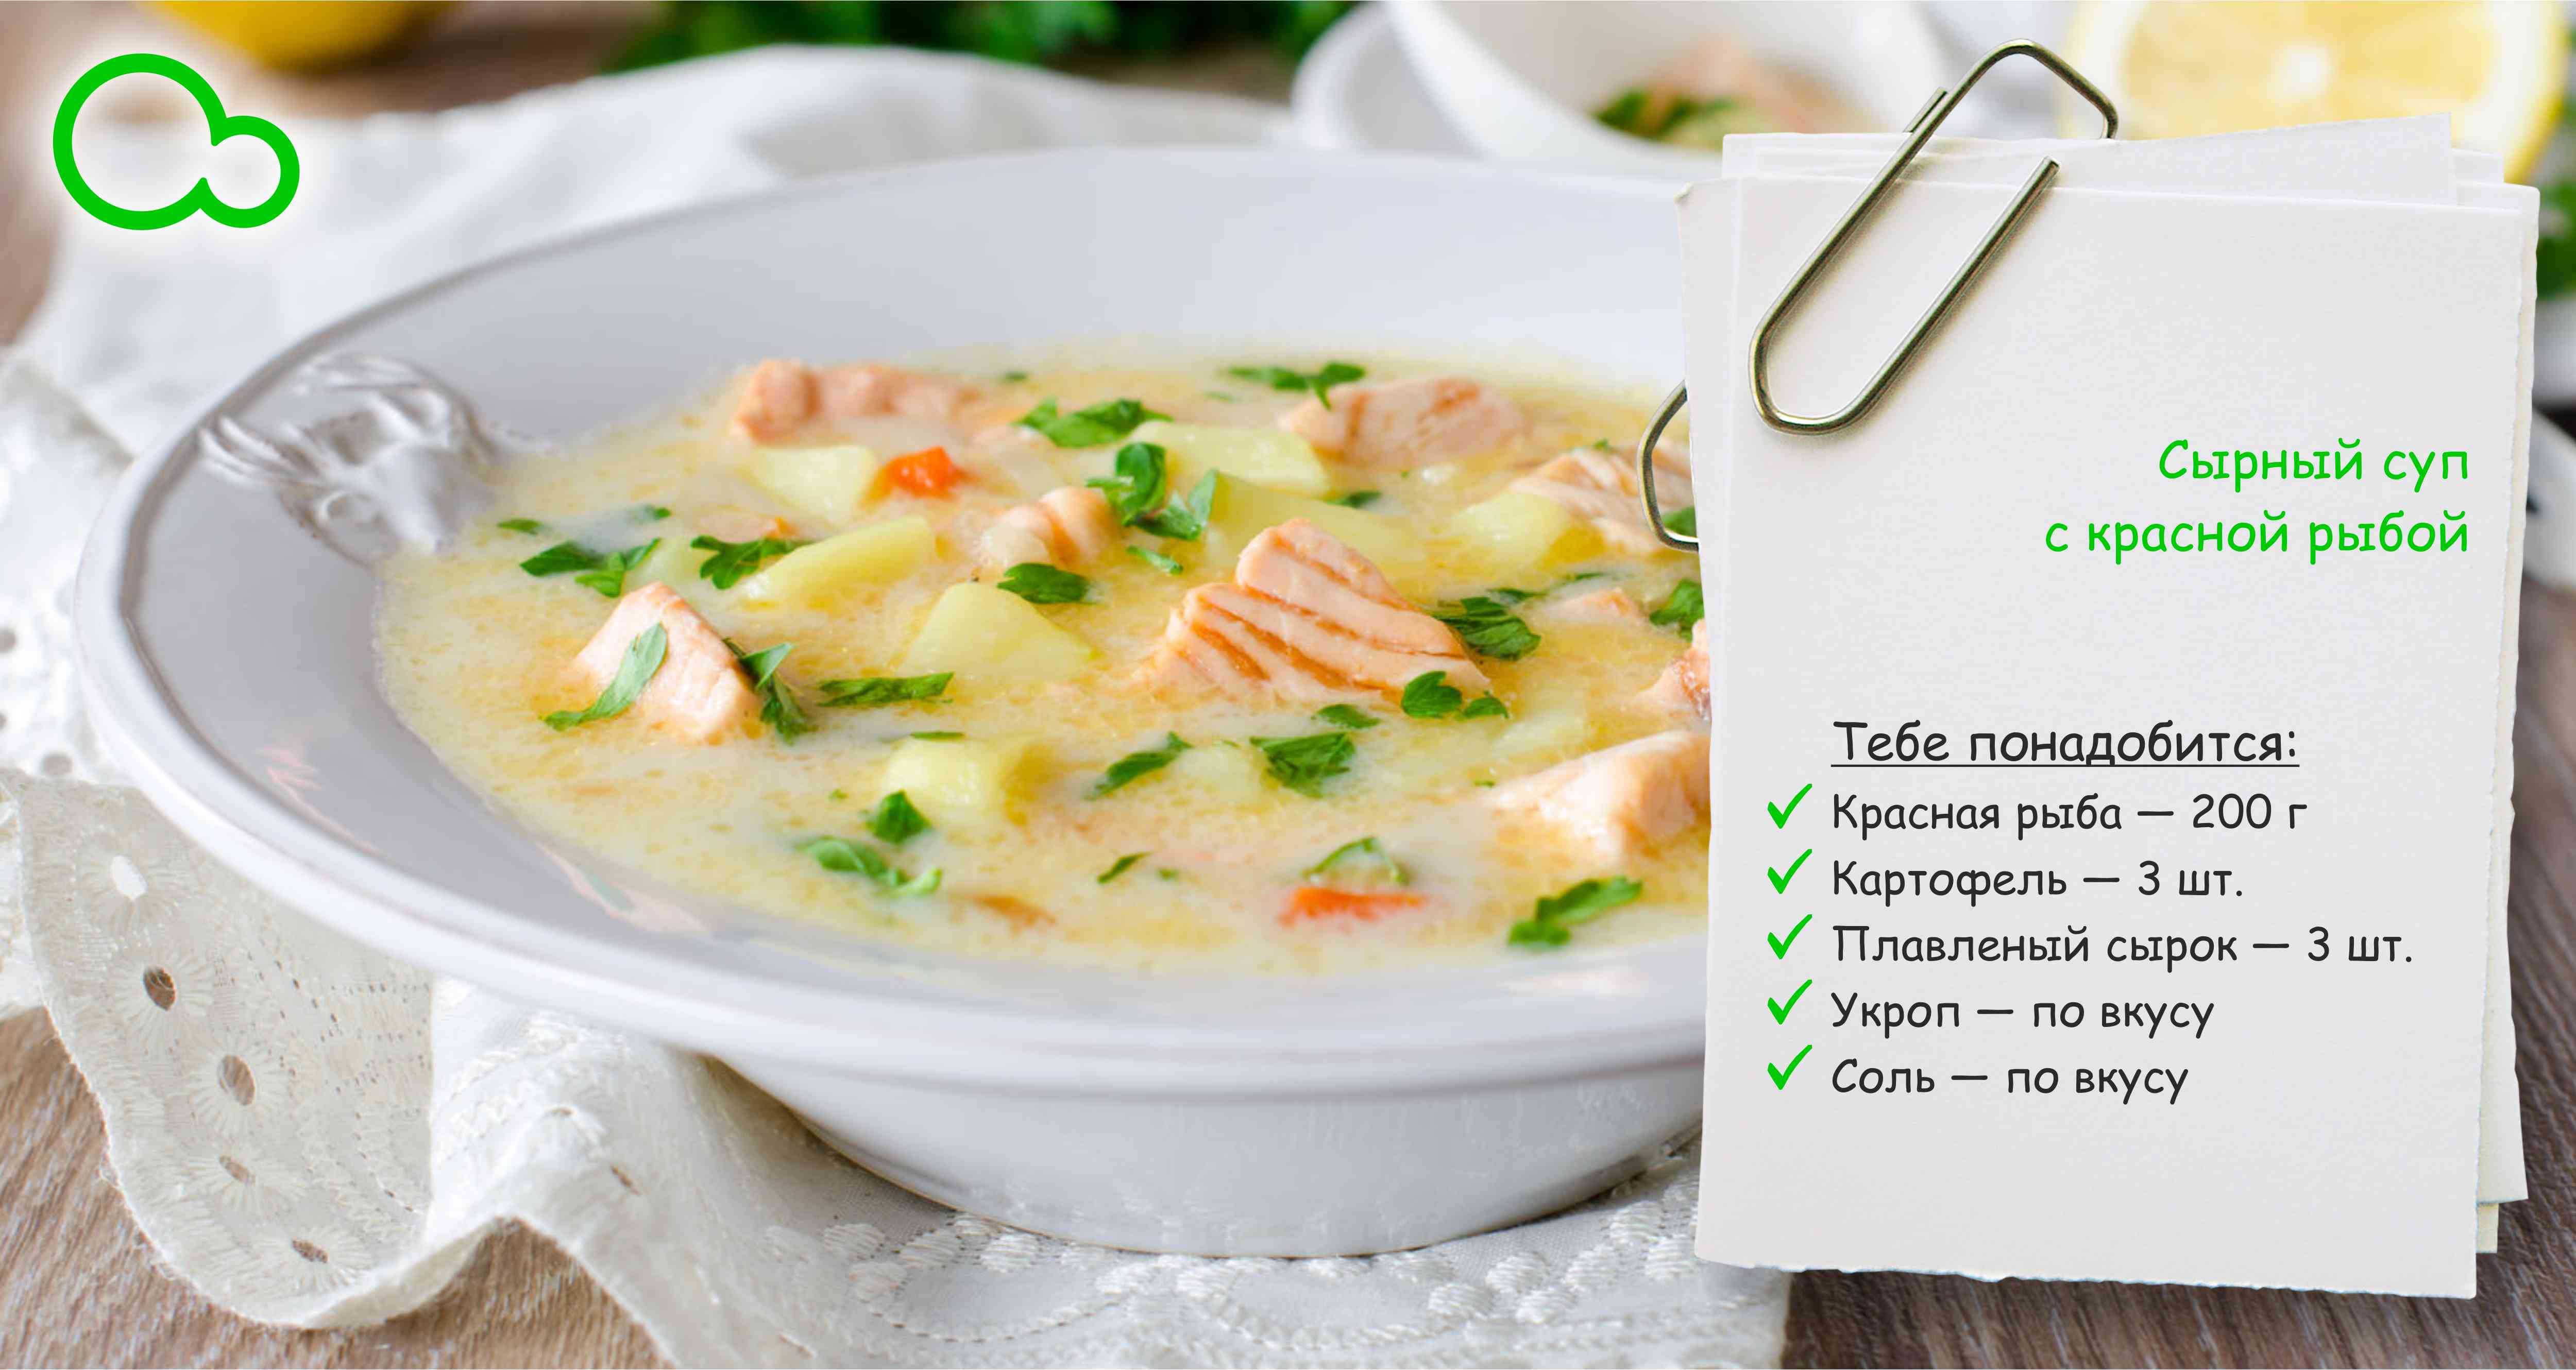 Как похудеть с помощью лукового супа?